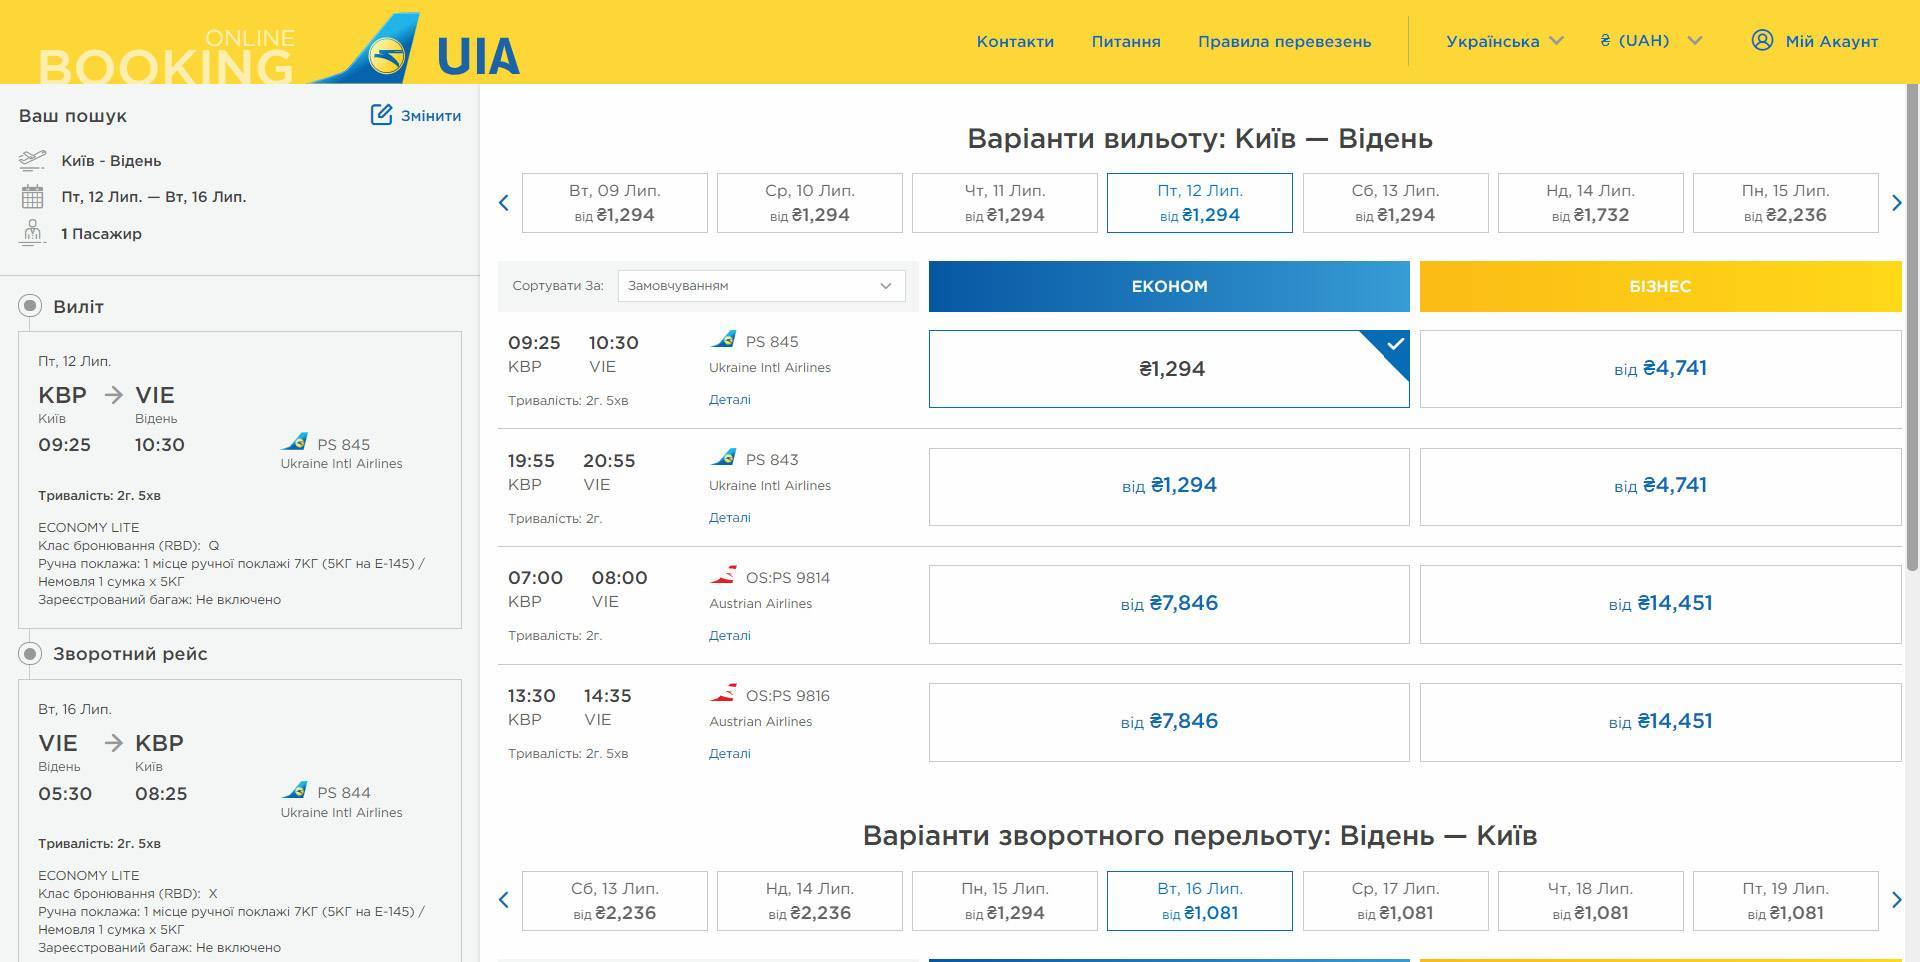 Ukraine international airlines (международные авиалинии украины, мау) отзывы клиентов